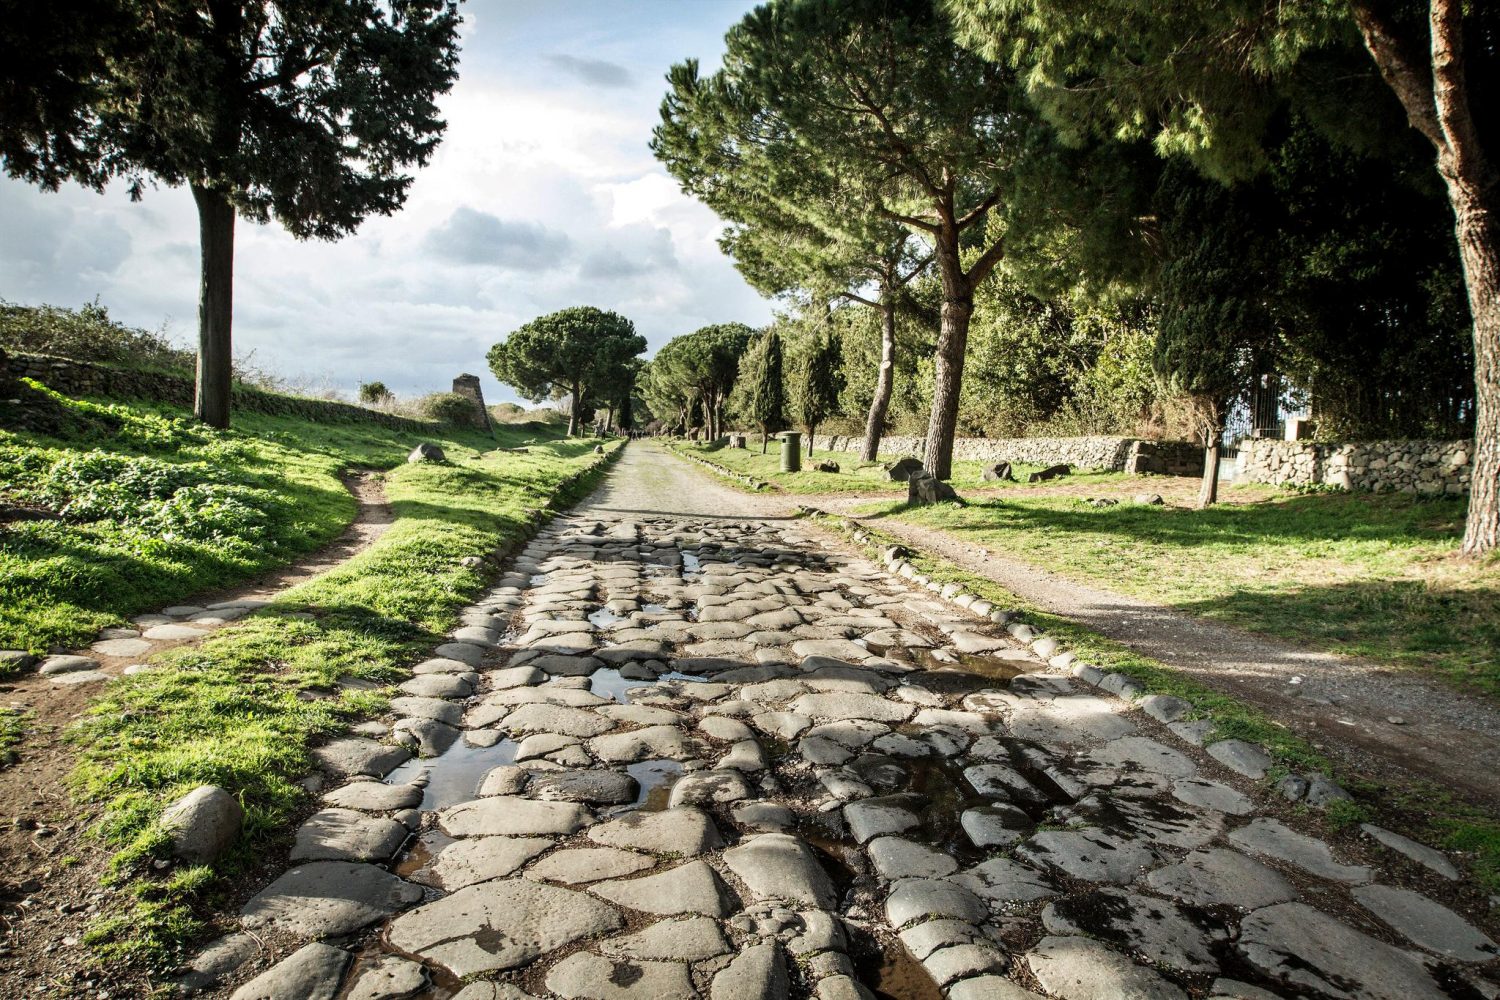 Via Appia/Appian Way, Italy